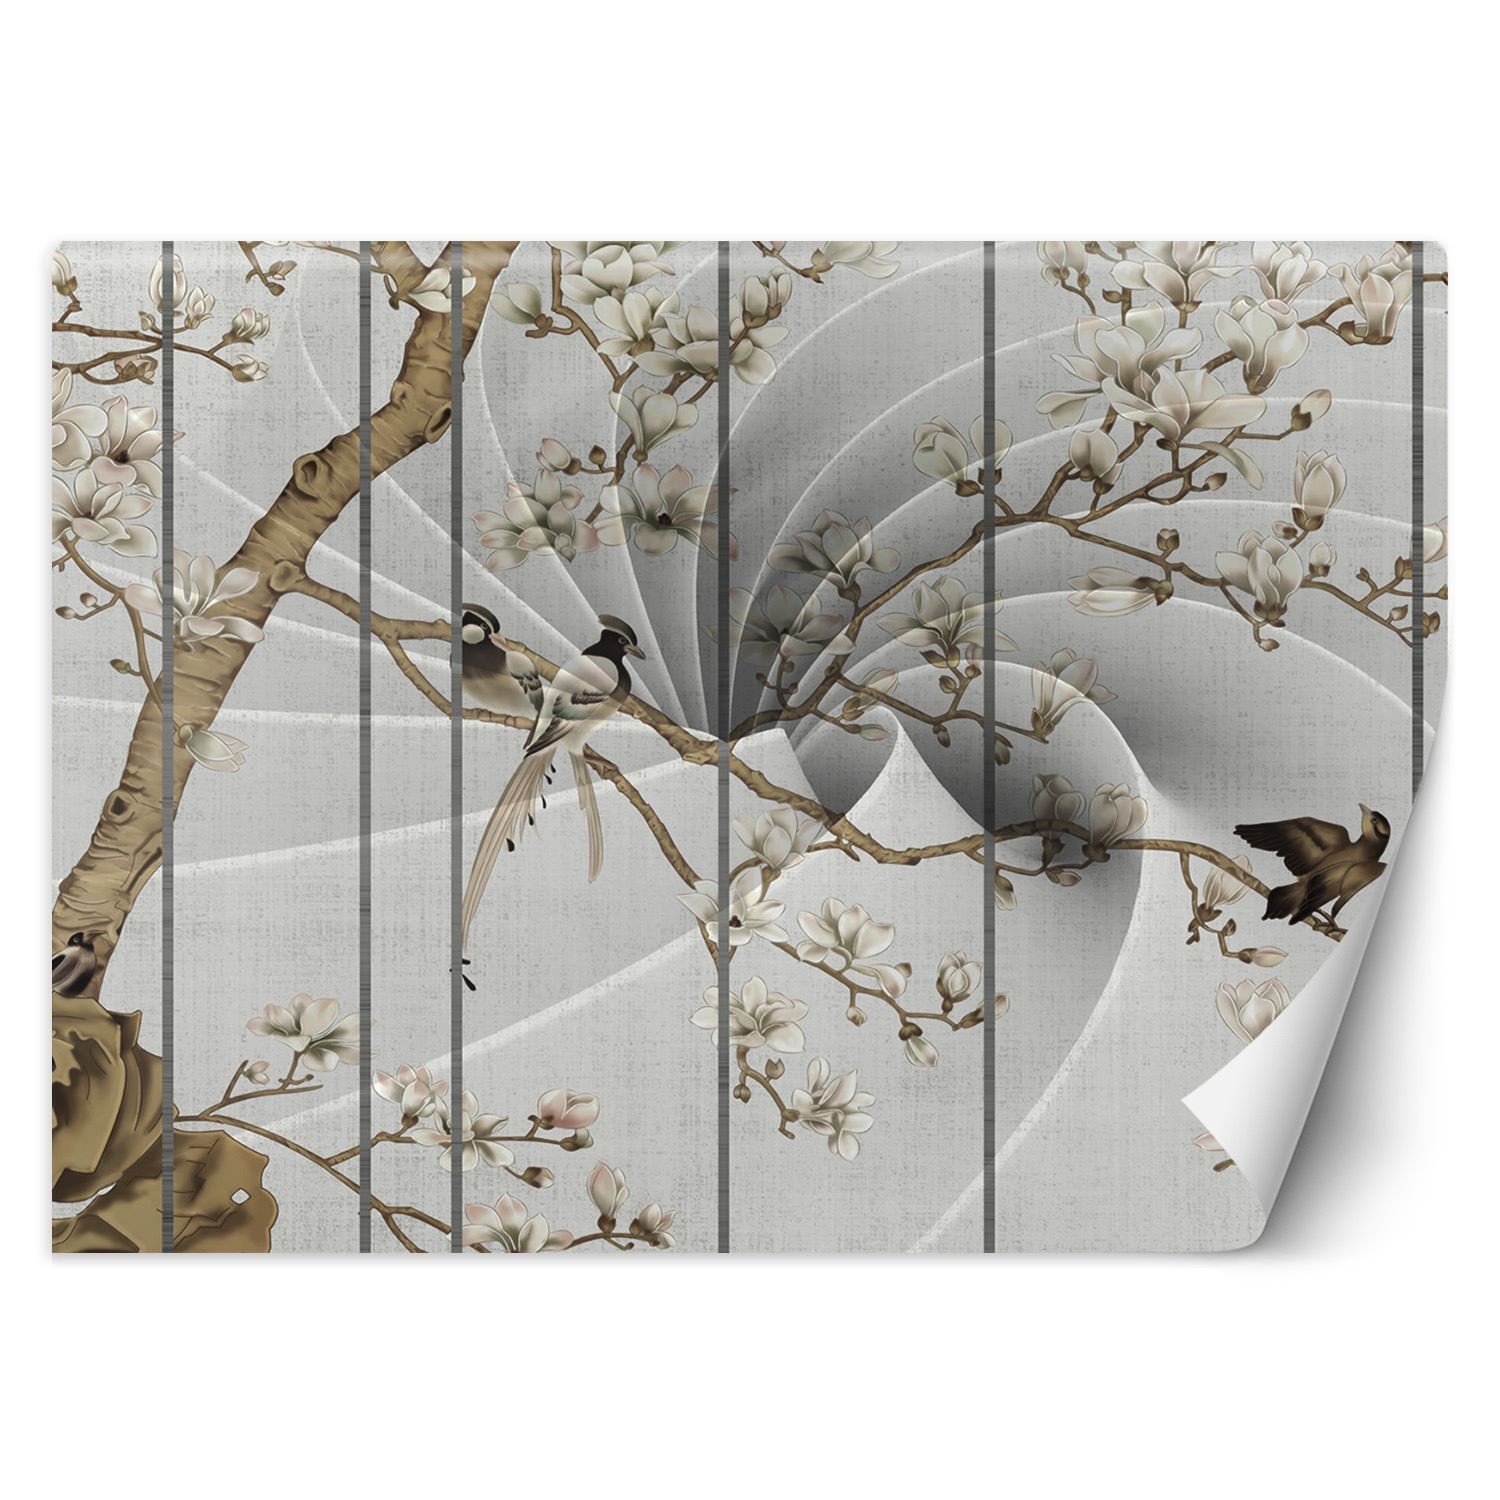 Trend24 – Behang – Vogels Op Een Boom – Behangpapier – Behang Woonkamer – Fotobehang – 450x315x2 cm – Incl. behanglijm